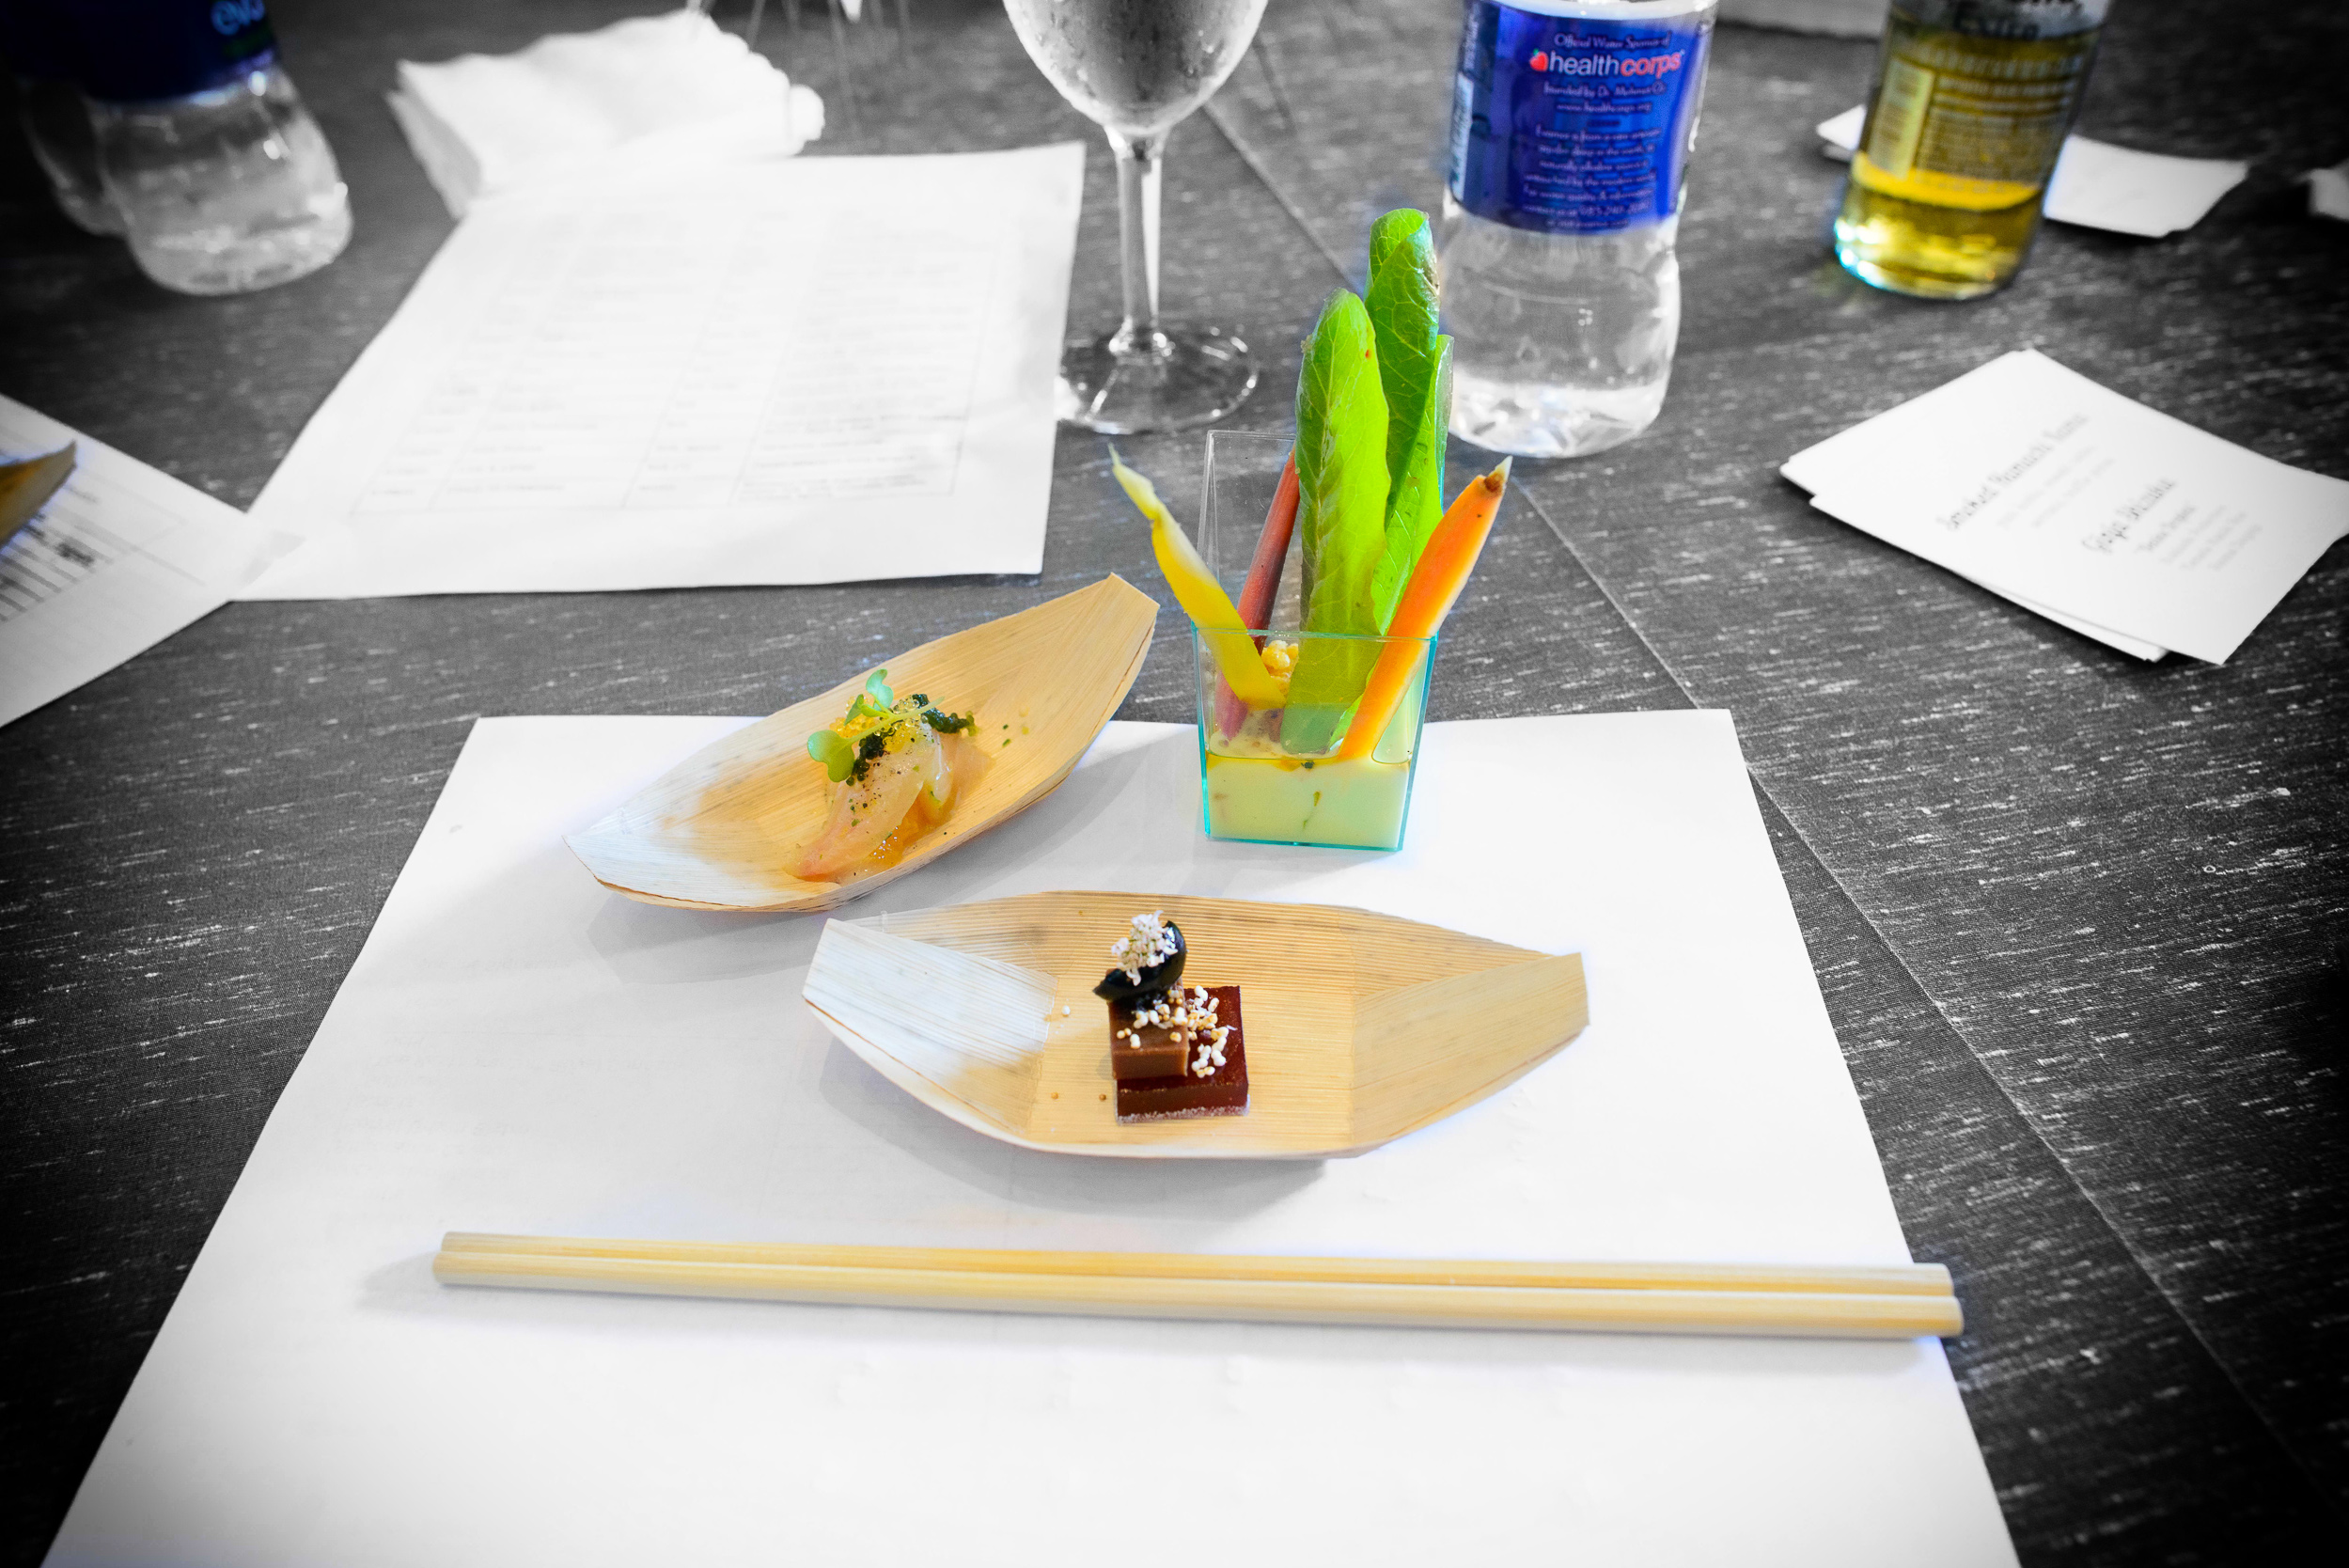 11th Contestant: Uchi - Hamachi with citrus, Uchi salad, peanut